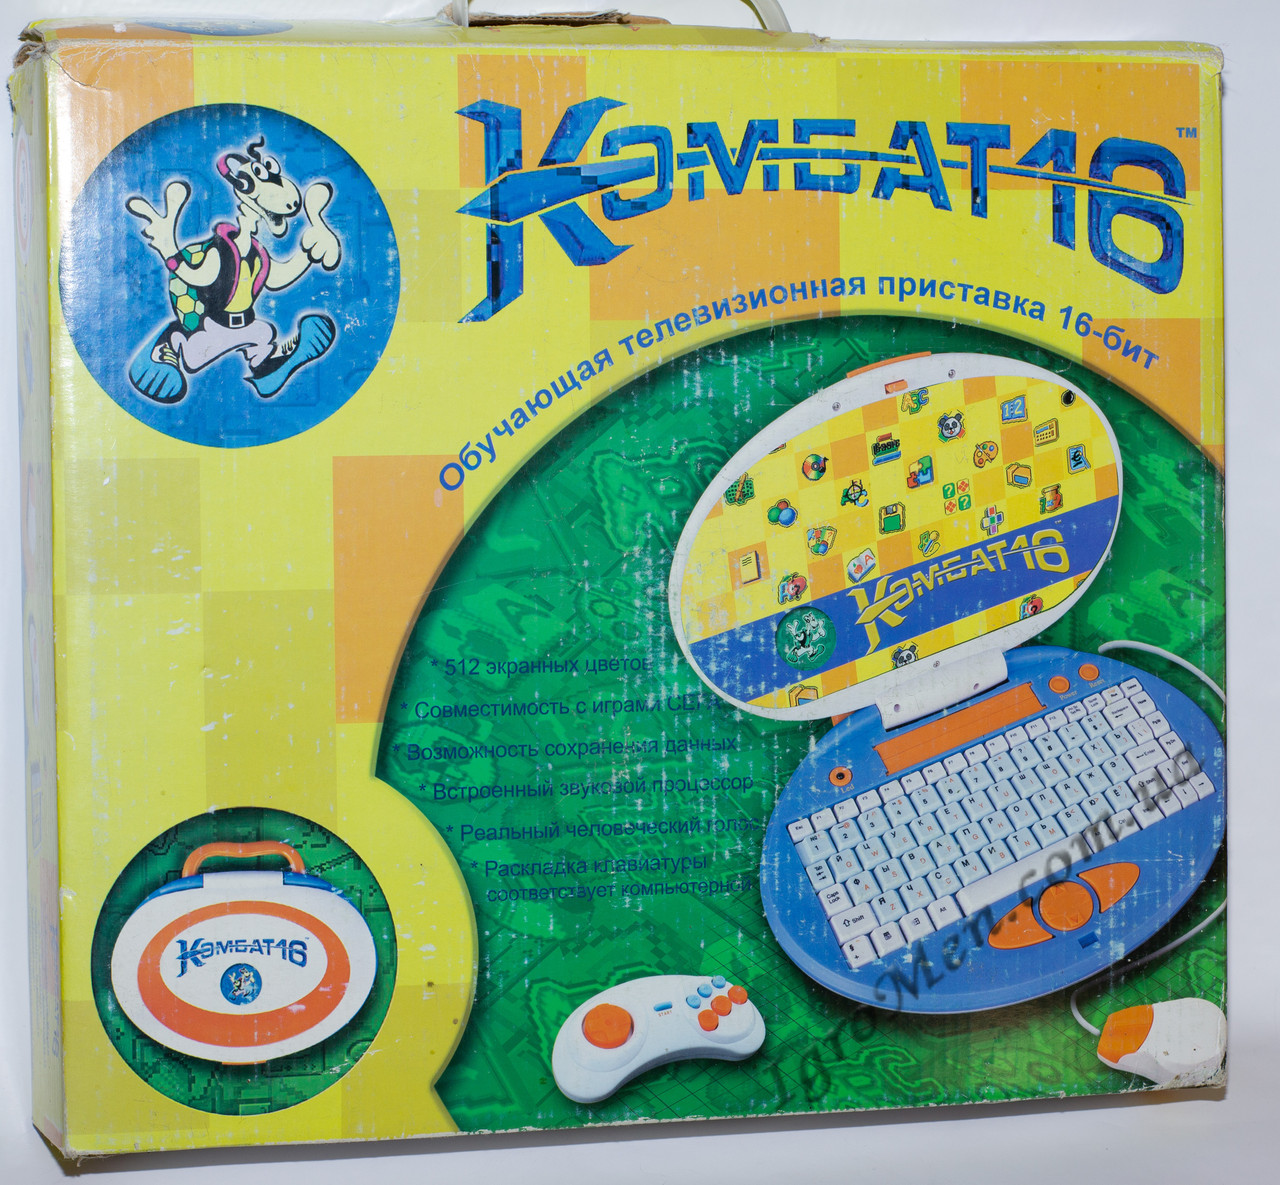 Sega Mega Drive (Комбат 16, навчальна, 2000-х)